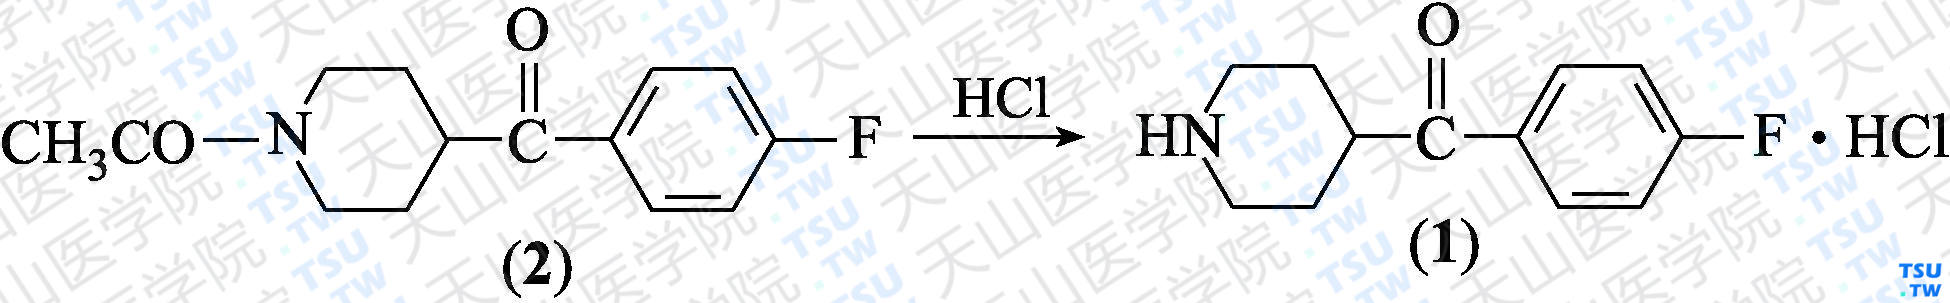 4-（4-氟苯甲酰基）哌啶盐酸盐（分子式：C<sub>12</sub>H<sub>14</sub>FNO·HCl）的合成方法路线及其结构式